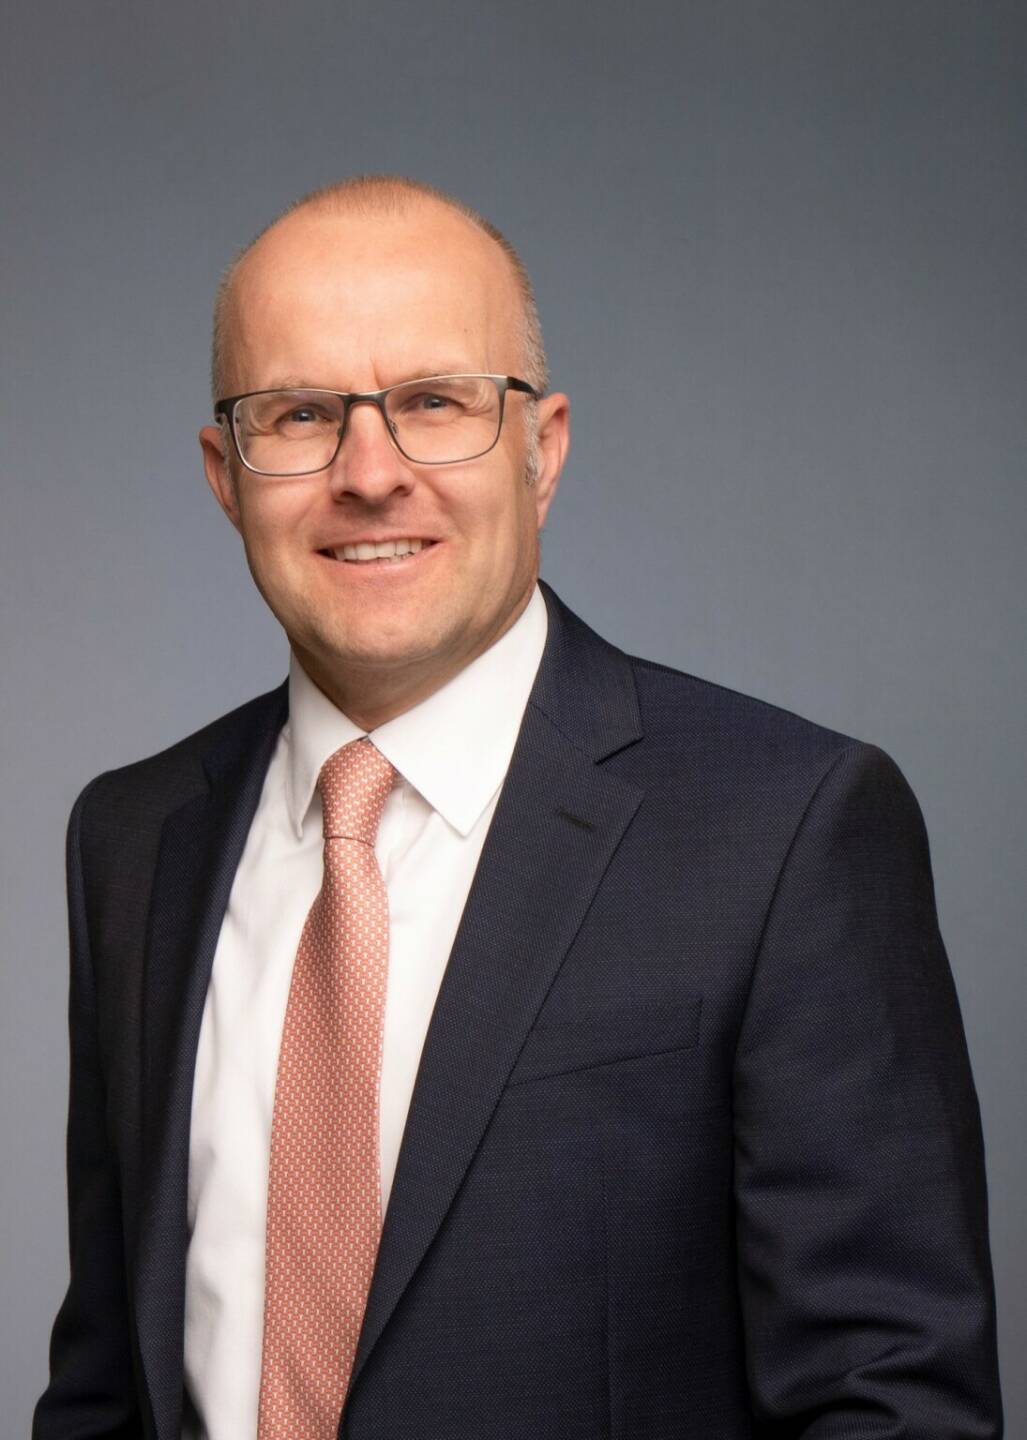 Sven Madsen ist Chief Investment Officer (CIO) und stellvertretender Leiter der Niederlassung Frankfurt am Main der DJE Kapital AG (DJE). Credit: DJE